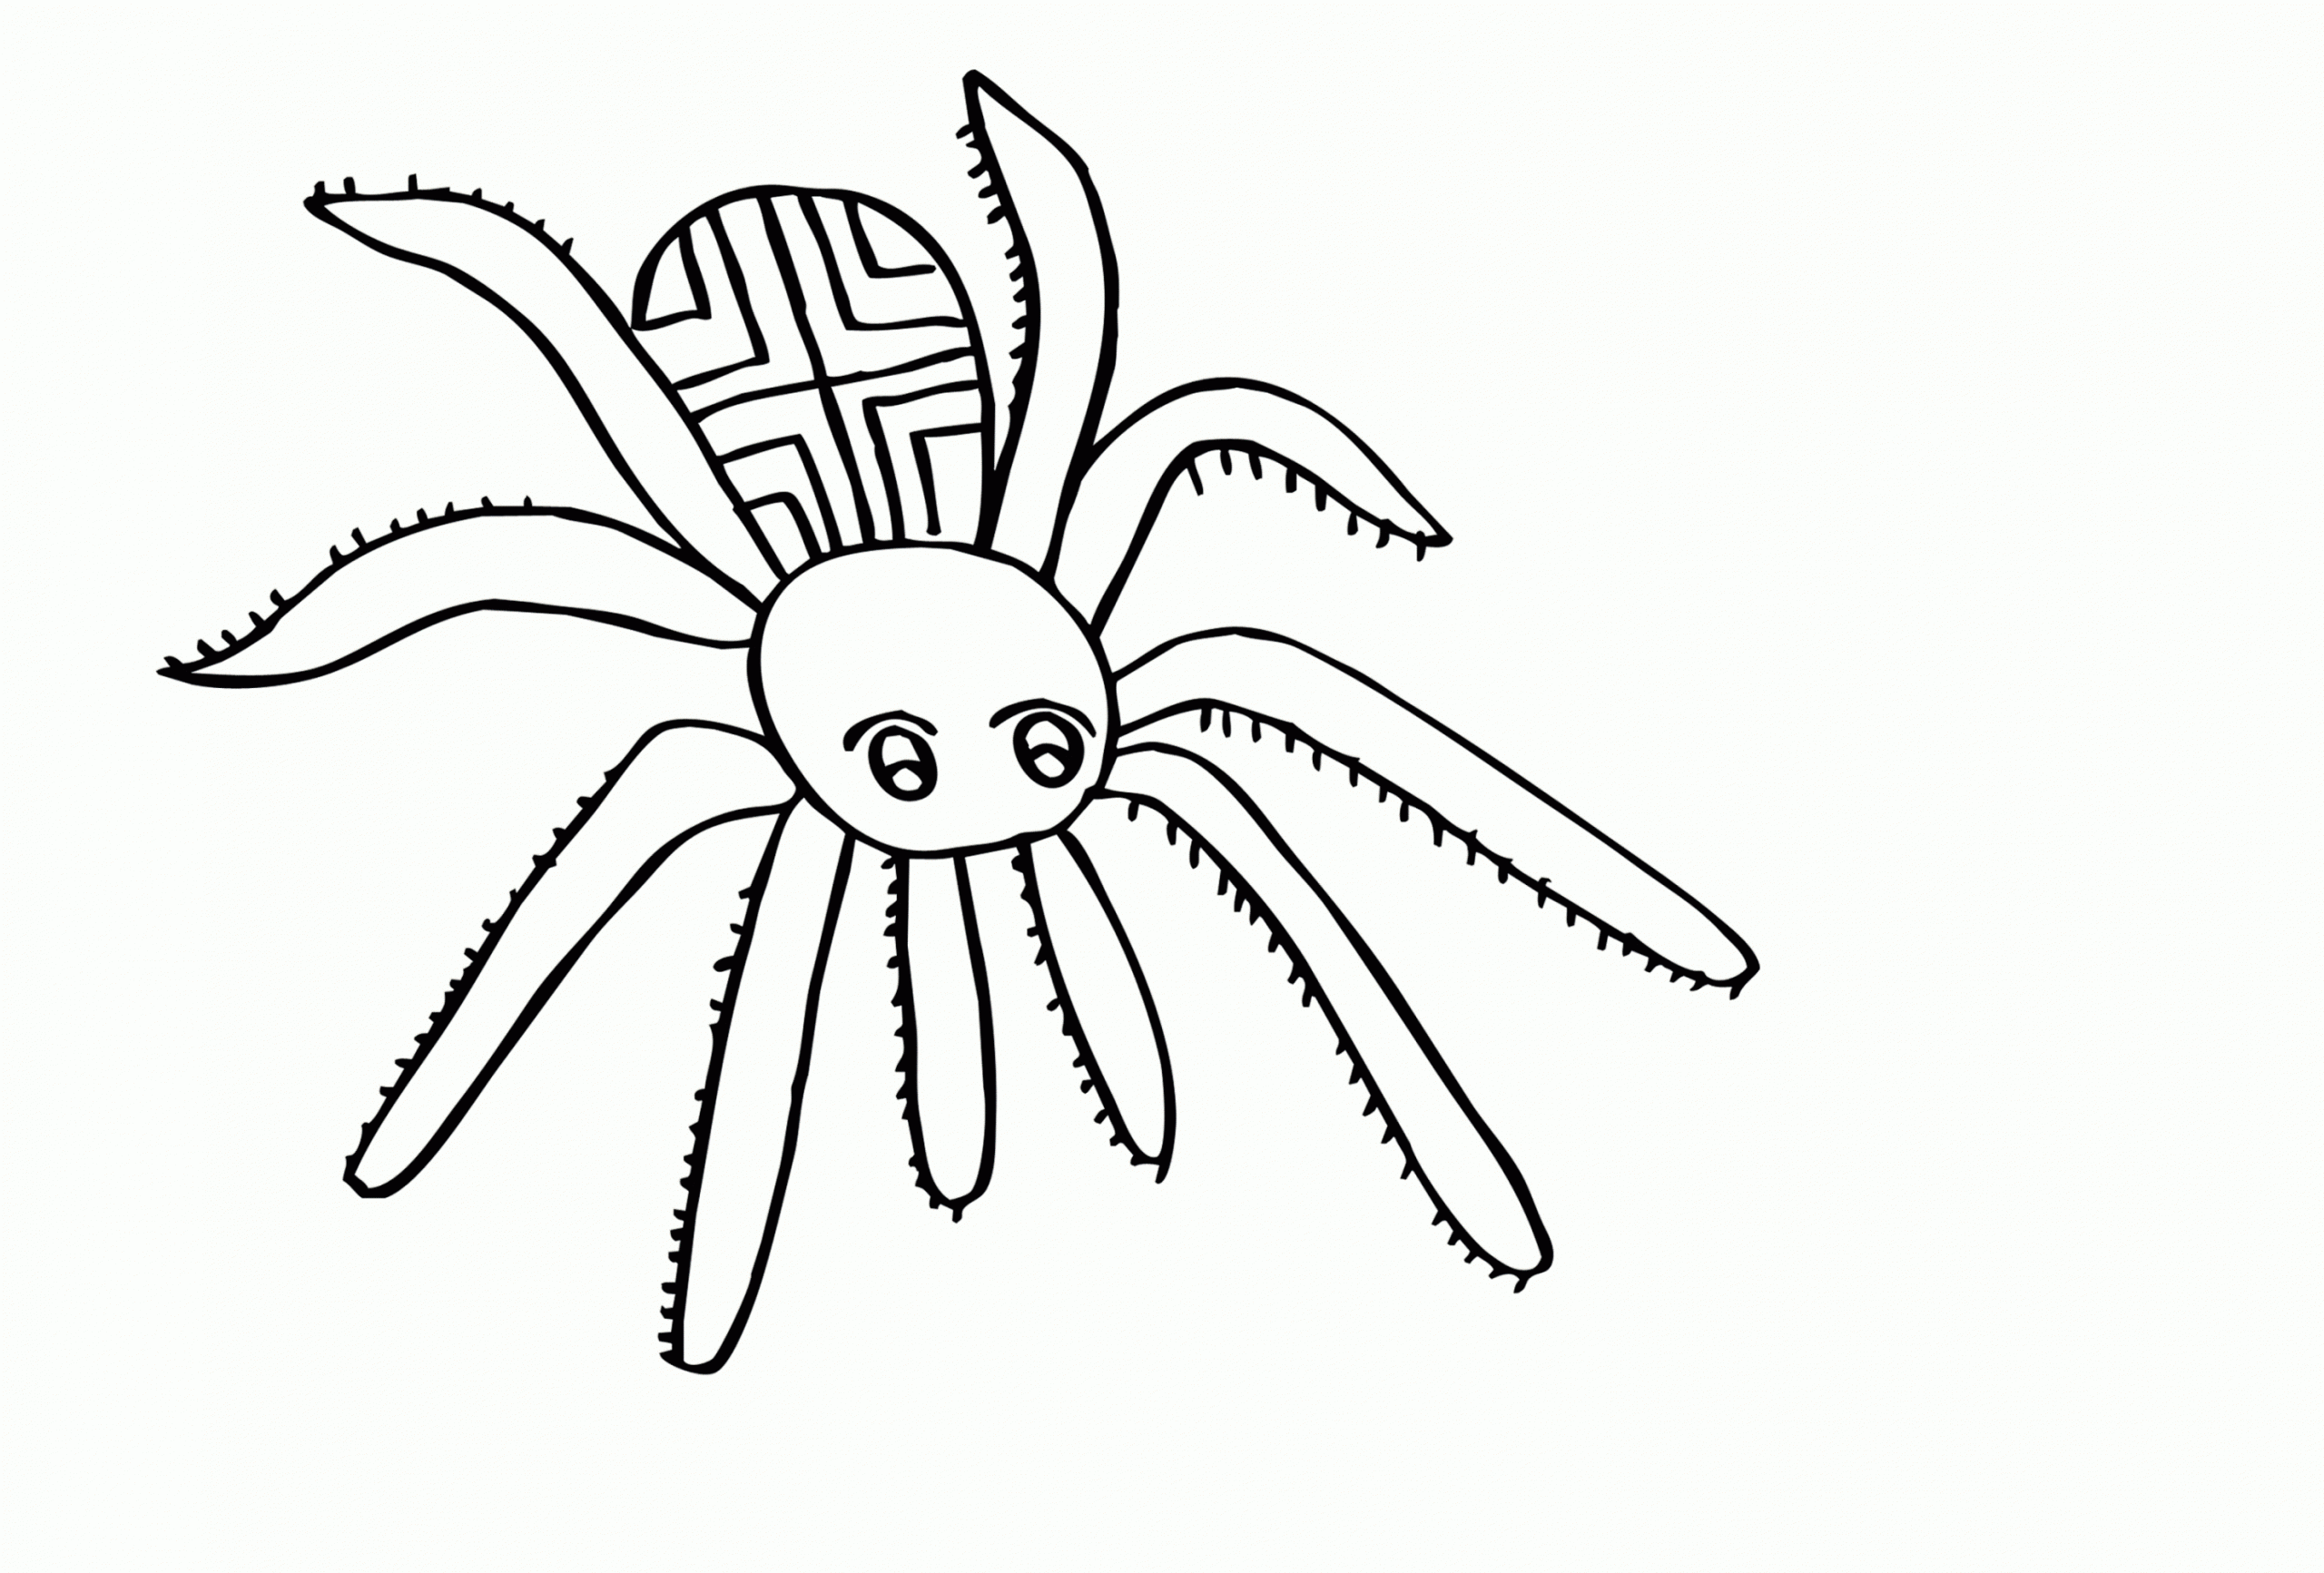 Malvorlagen Zum Ausdrucken Ausmalbilder Spinne Kostenlos 1 für Spinnen Ausmalbilder Zum Ausdrucken